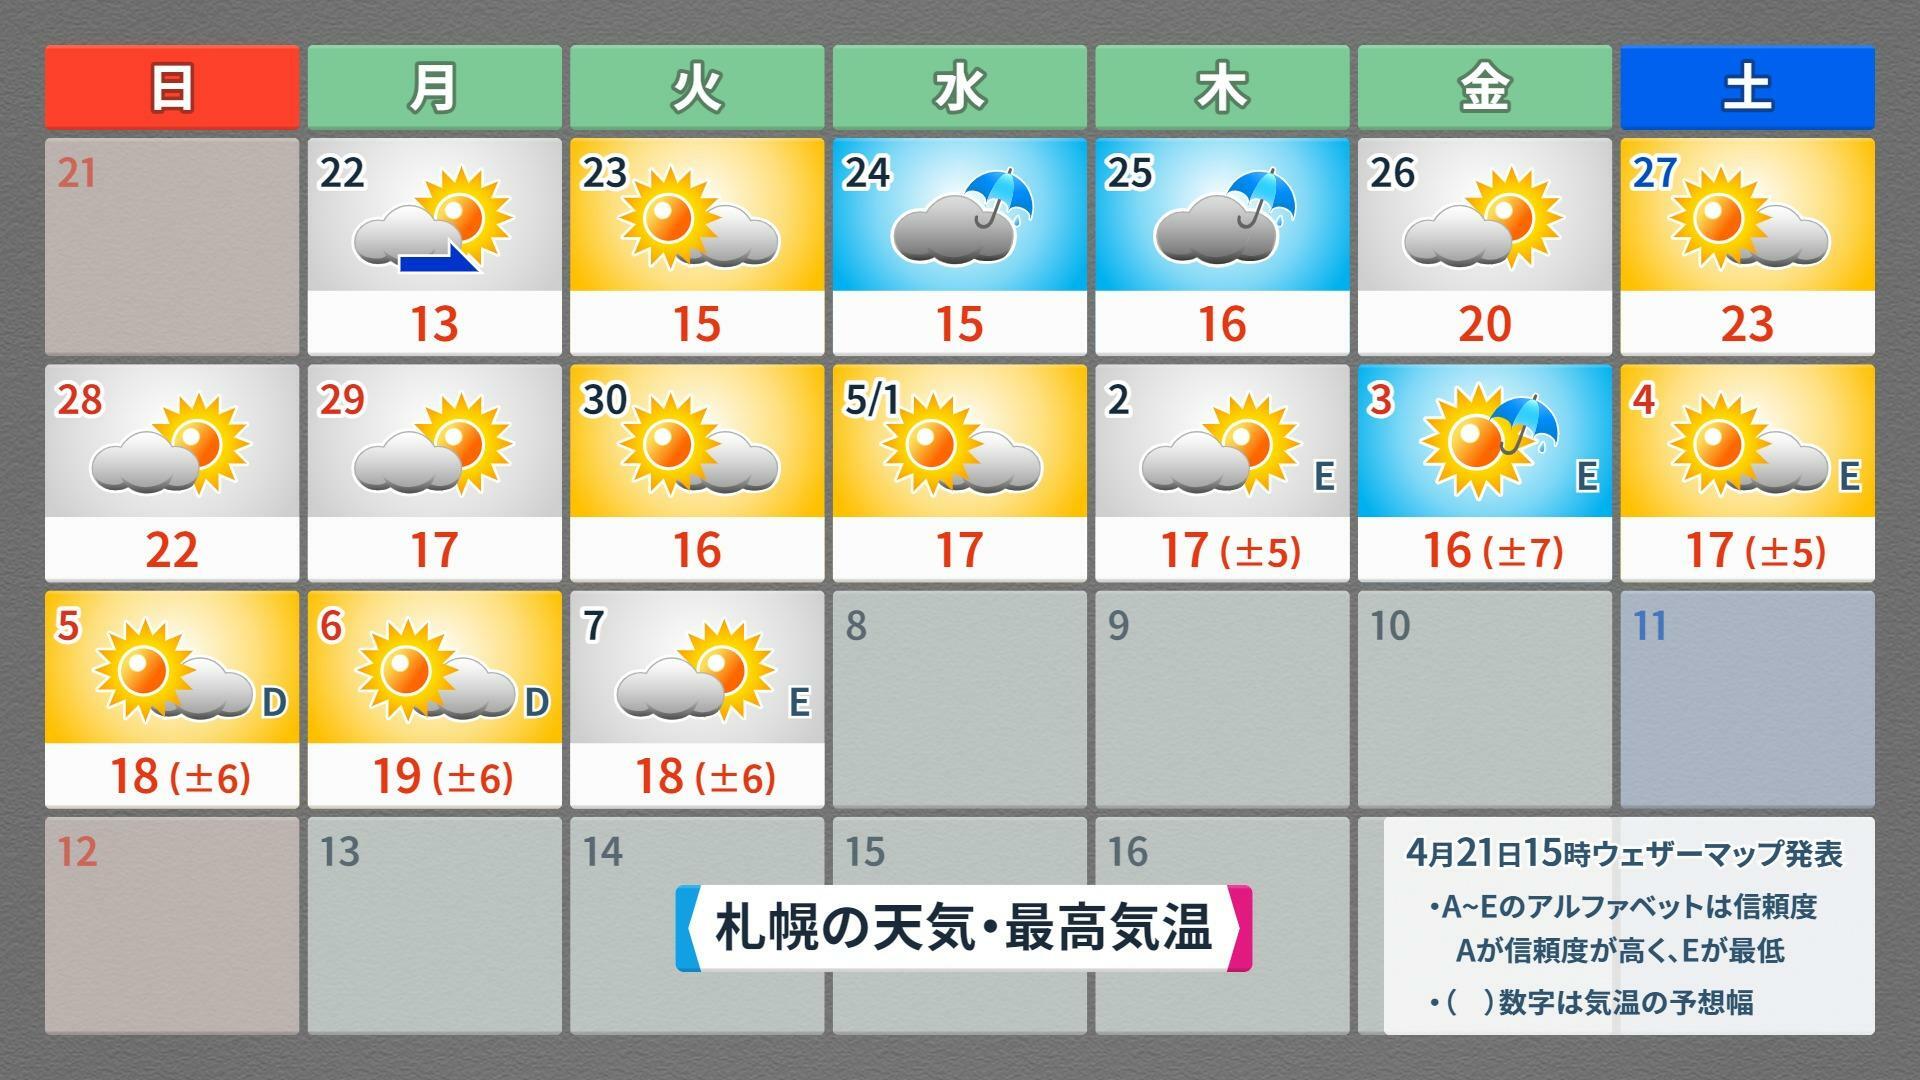 【札幌】この先16日間の天気予報（4月21日午後5時現在）、ウェザーマップ作画